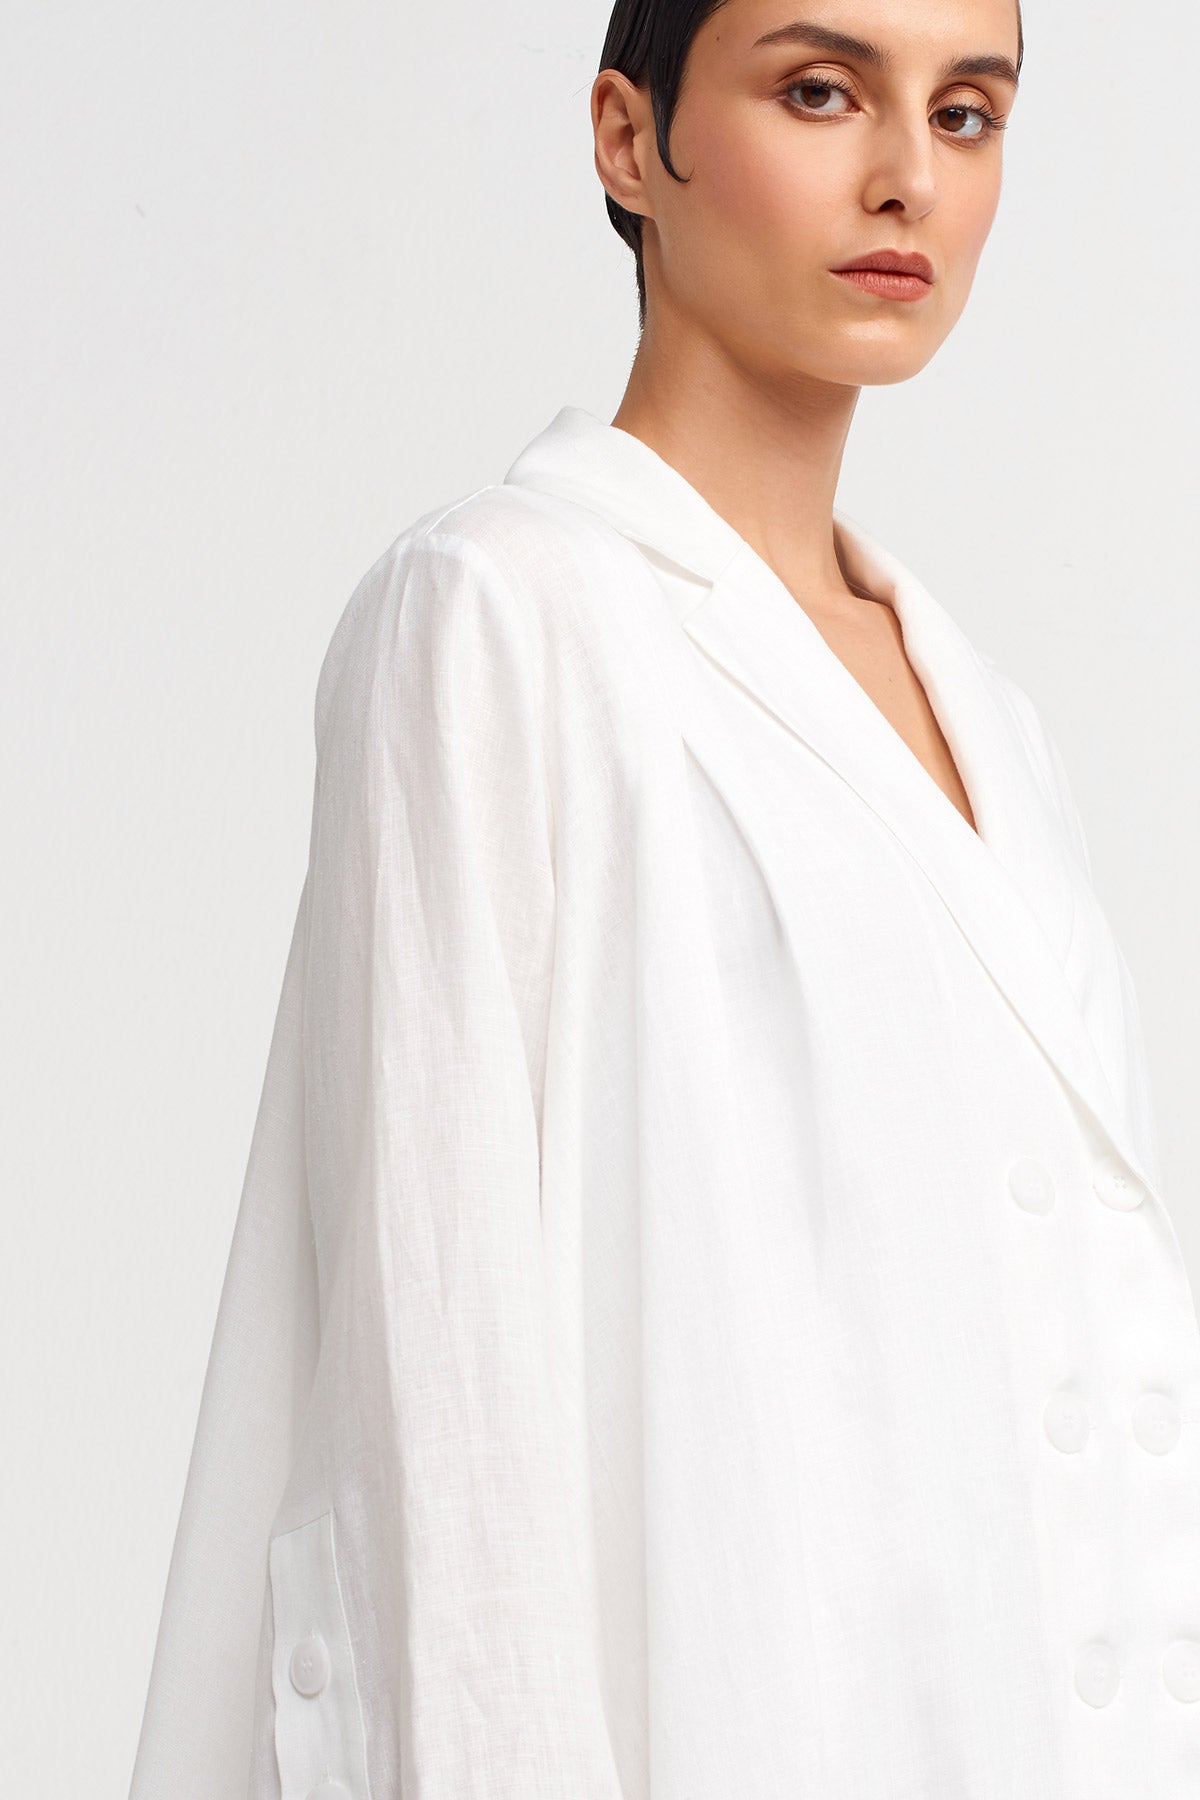 Kırık Beyaz Çift Düğmeli Ceket Elbise-Y244014029